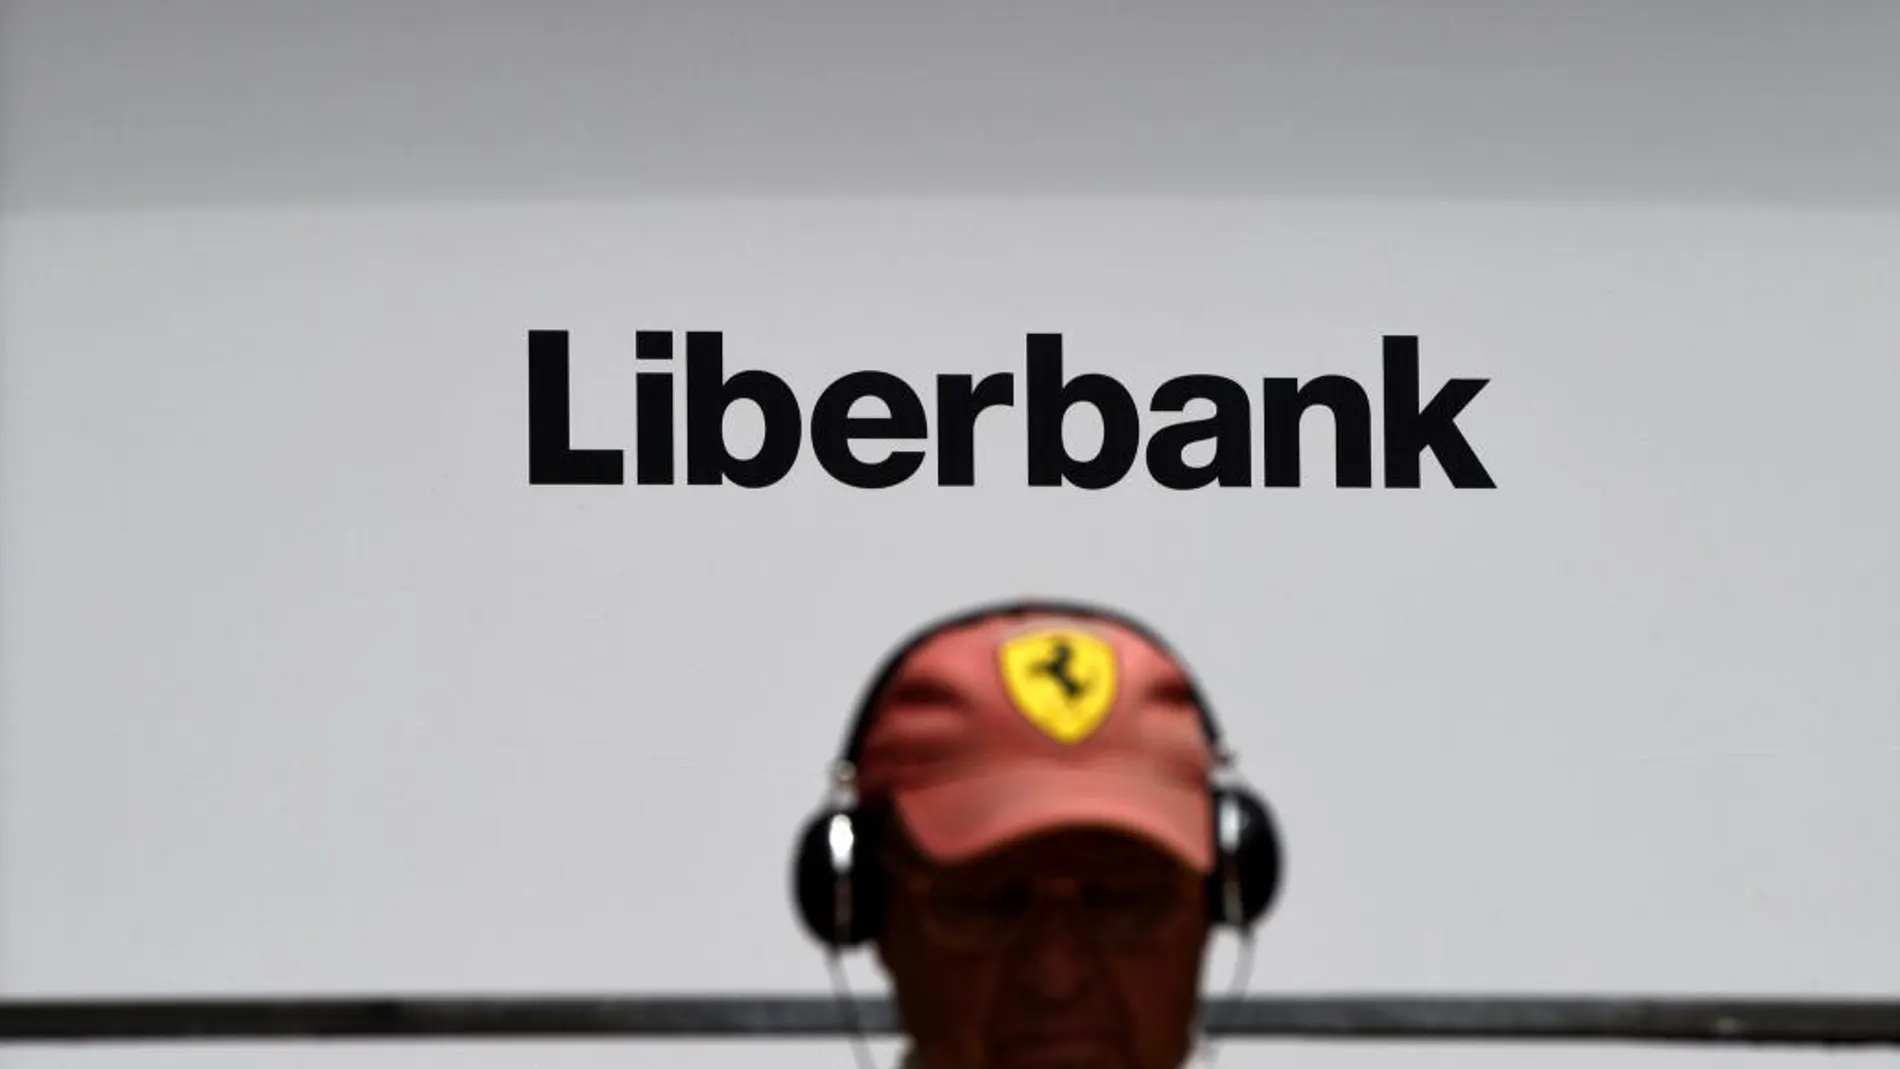 La cotización de Liberbank se ha visto afectada en los últimos días por fuertes descensos y una alta volatilidad.